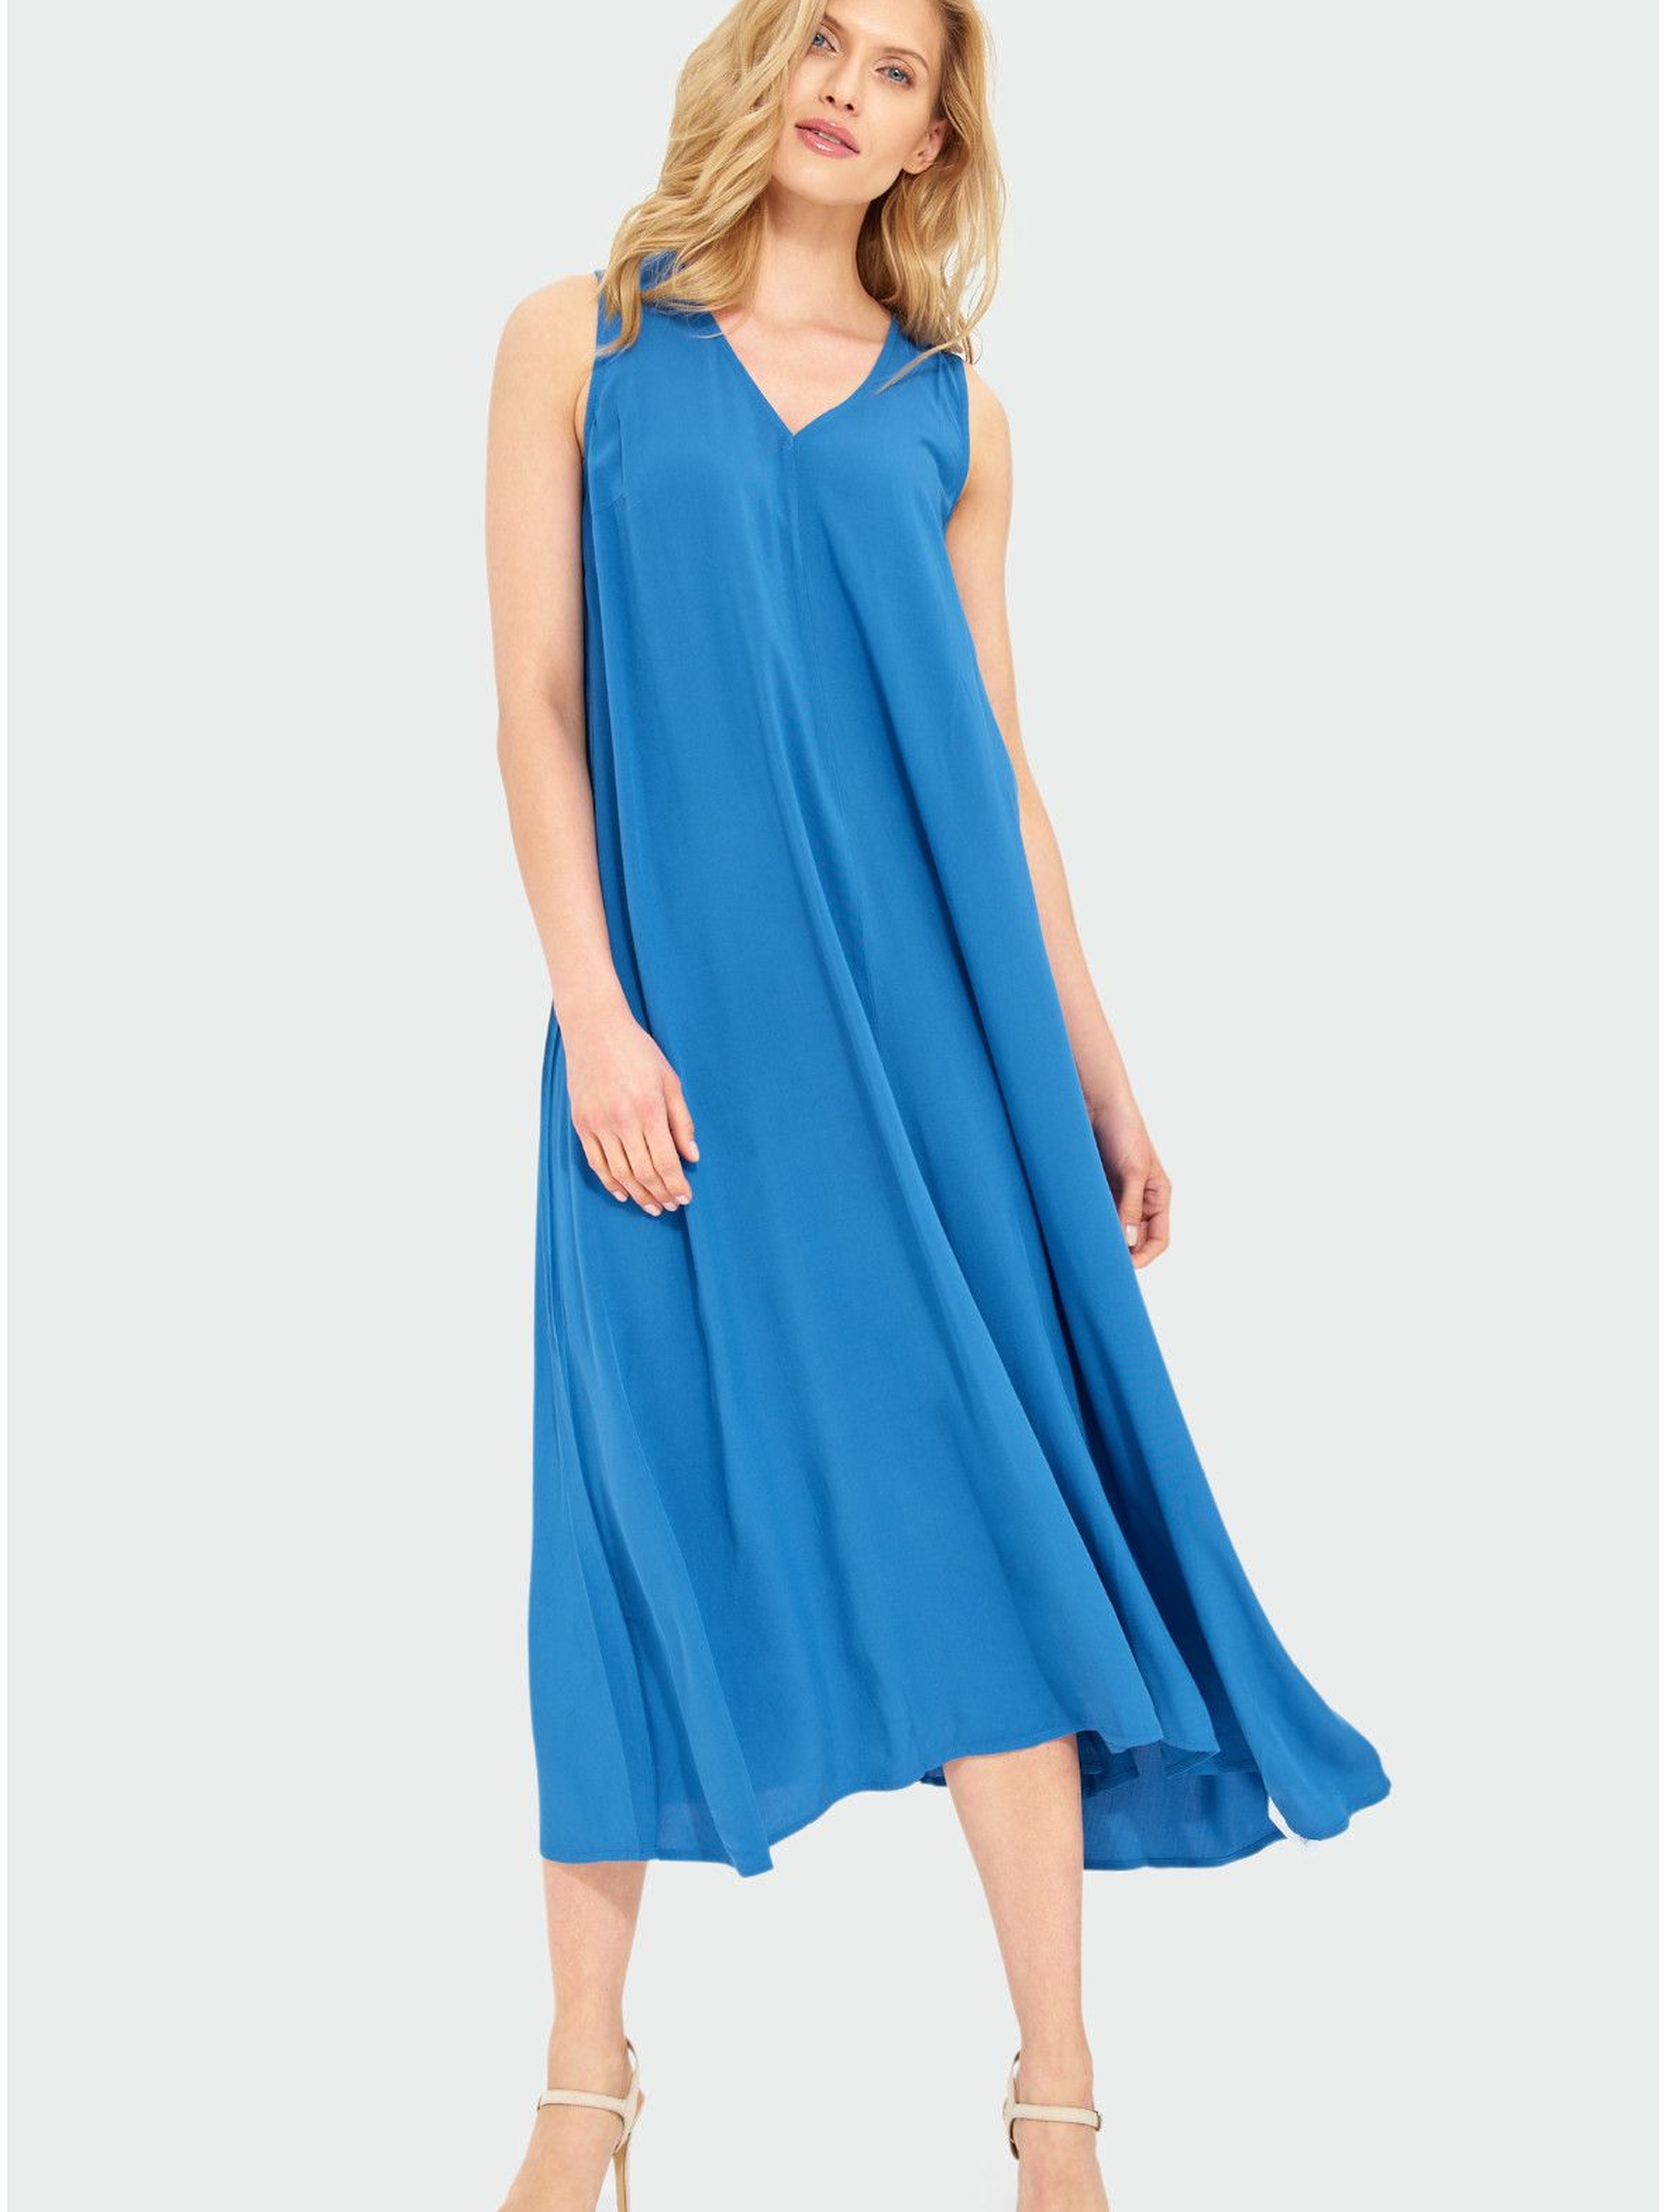 Zwiewna niebieska sukienka damska na grube ramiączka